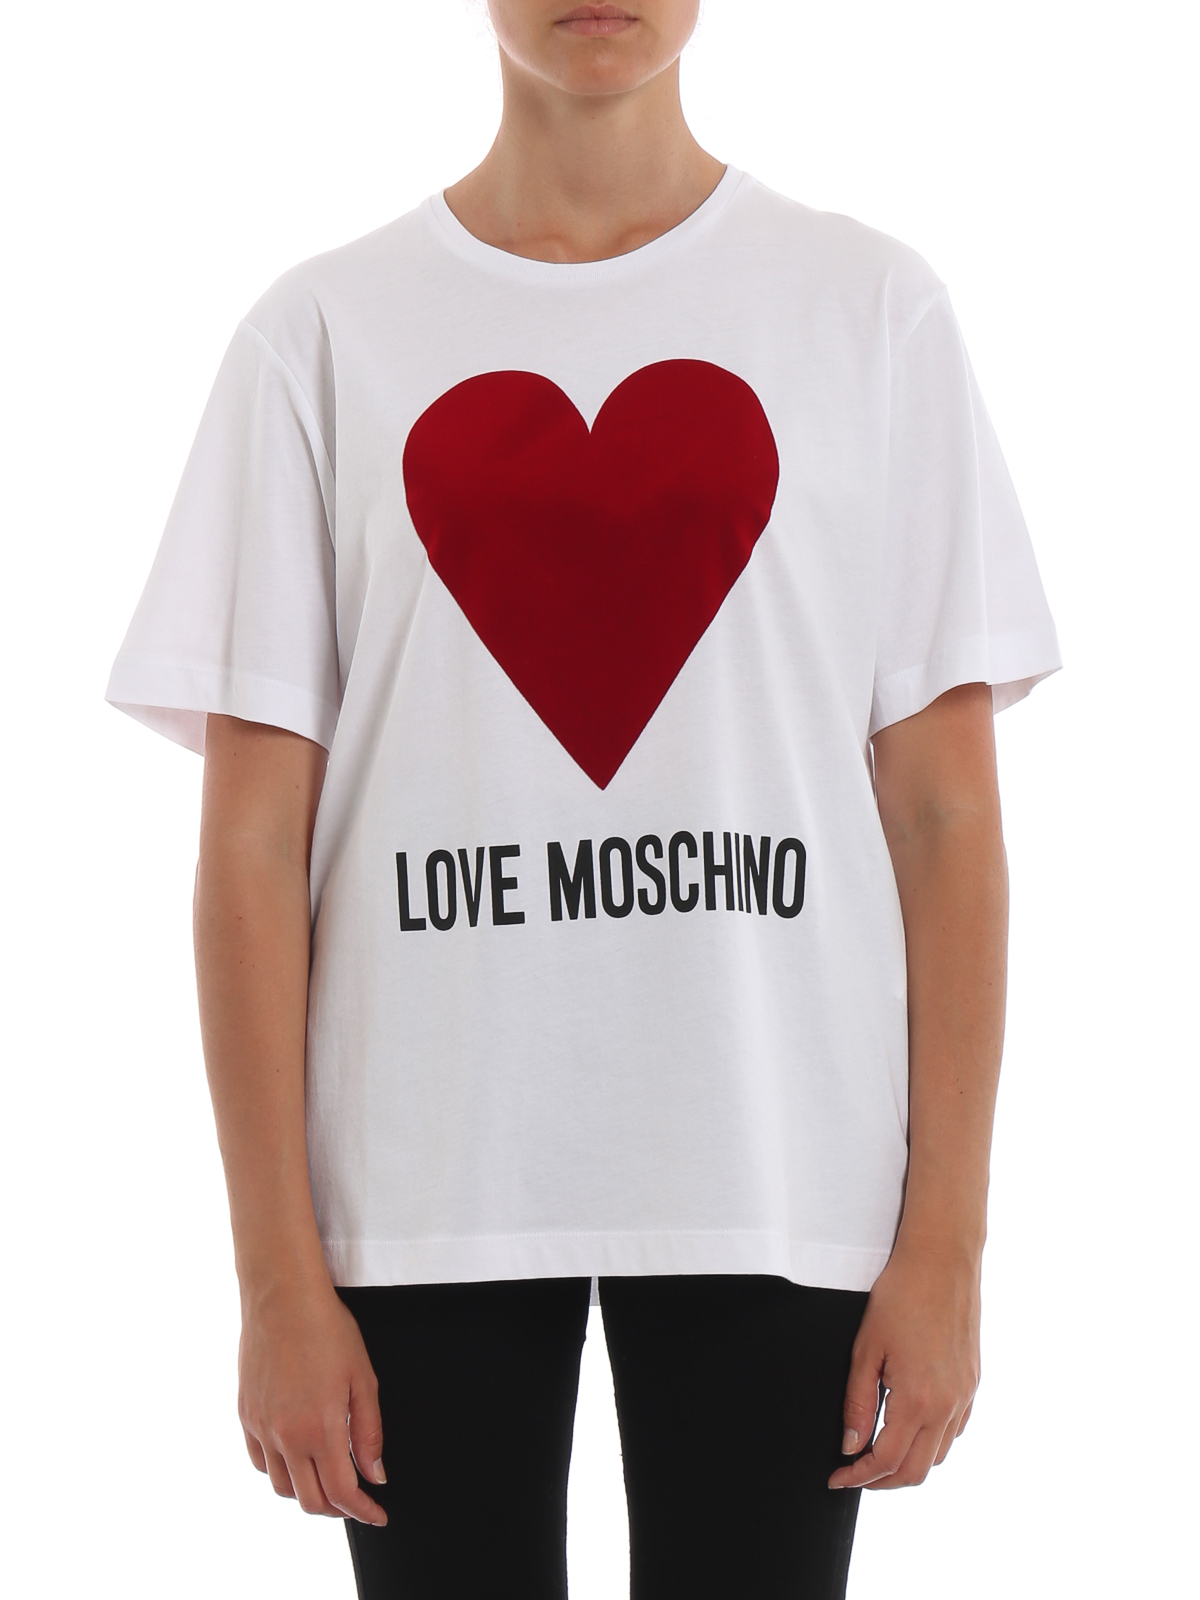 Tシャツ Love Moschino - Tシャツ - オーヴァー - W4F8721M3517A00